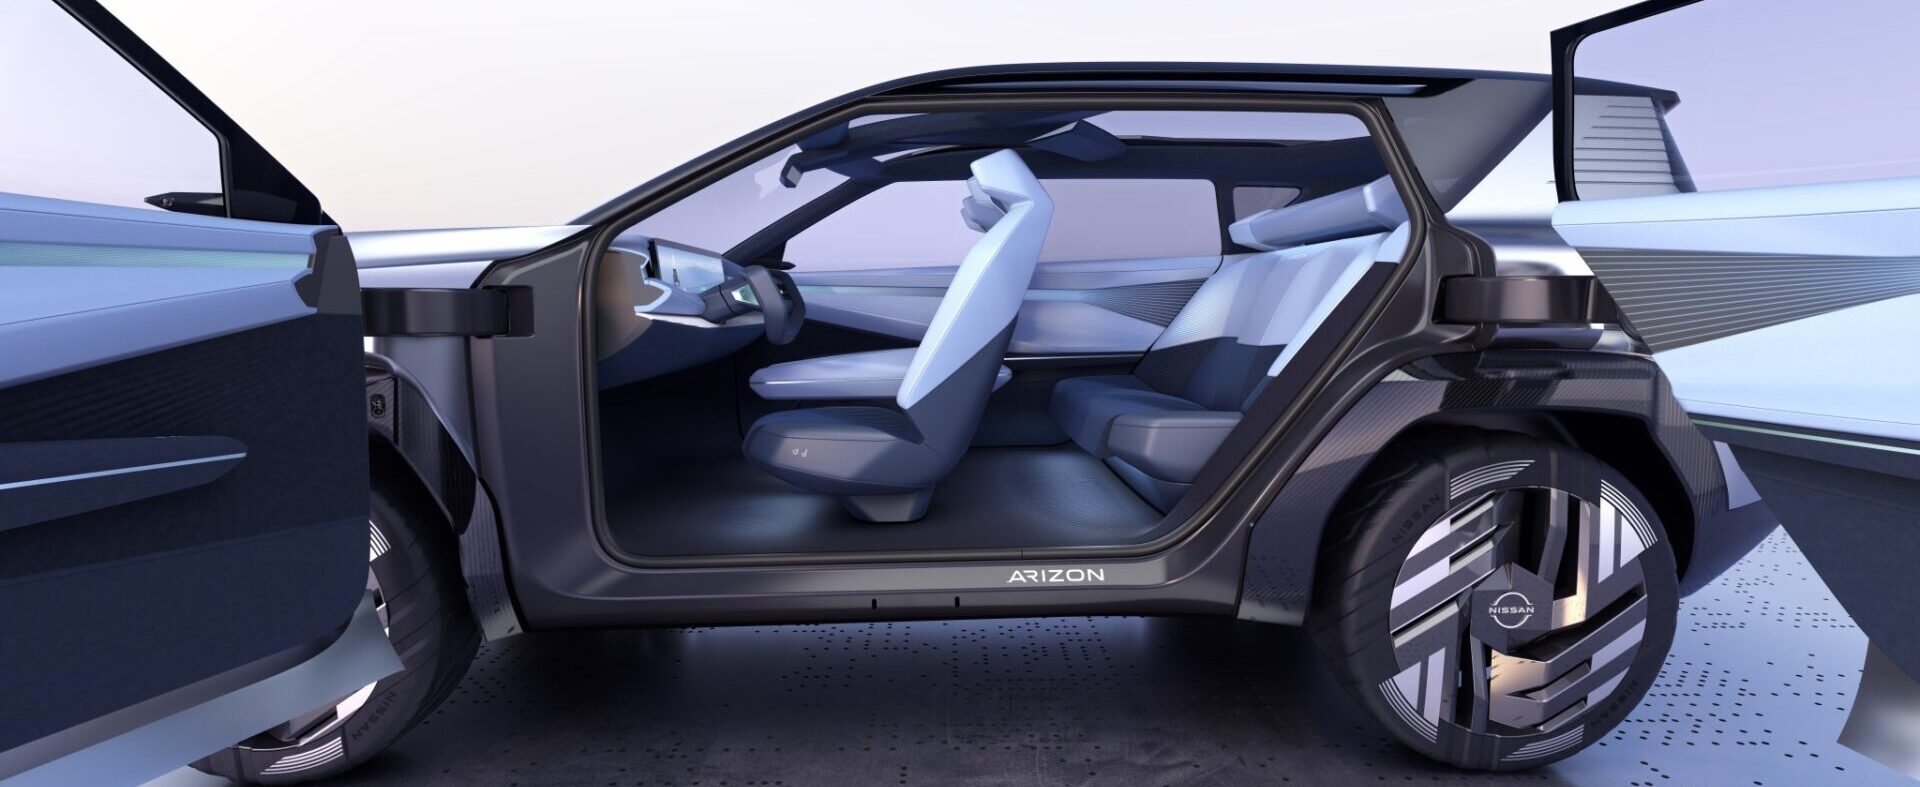 Nissan чествует Auto Shanghai 2023 с новой концепцией Arizona